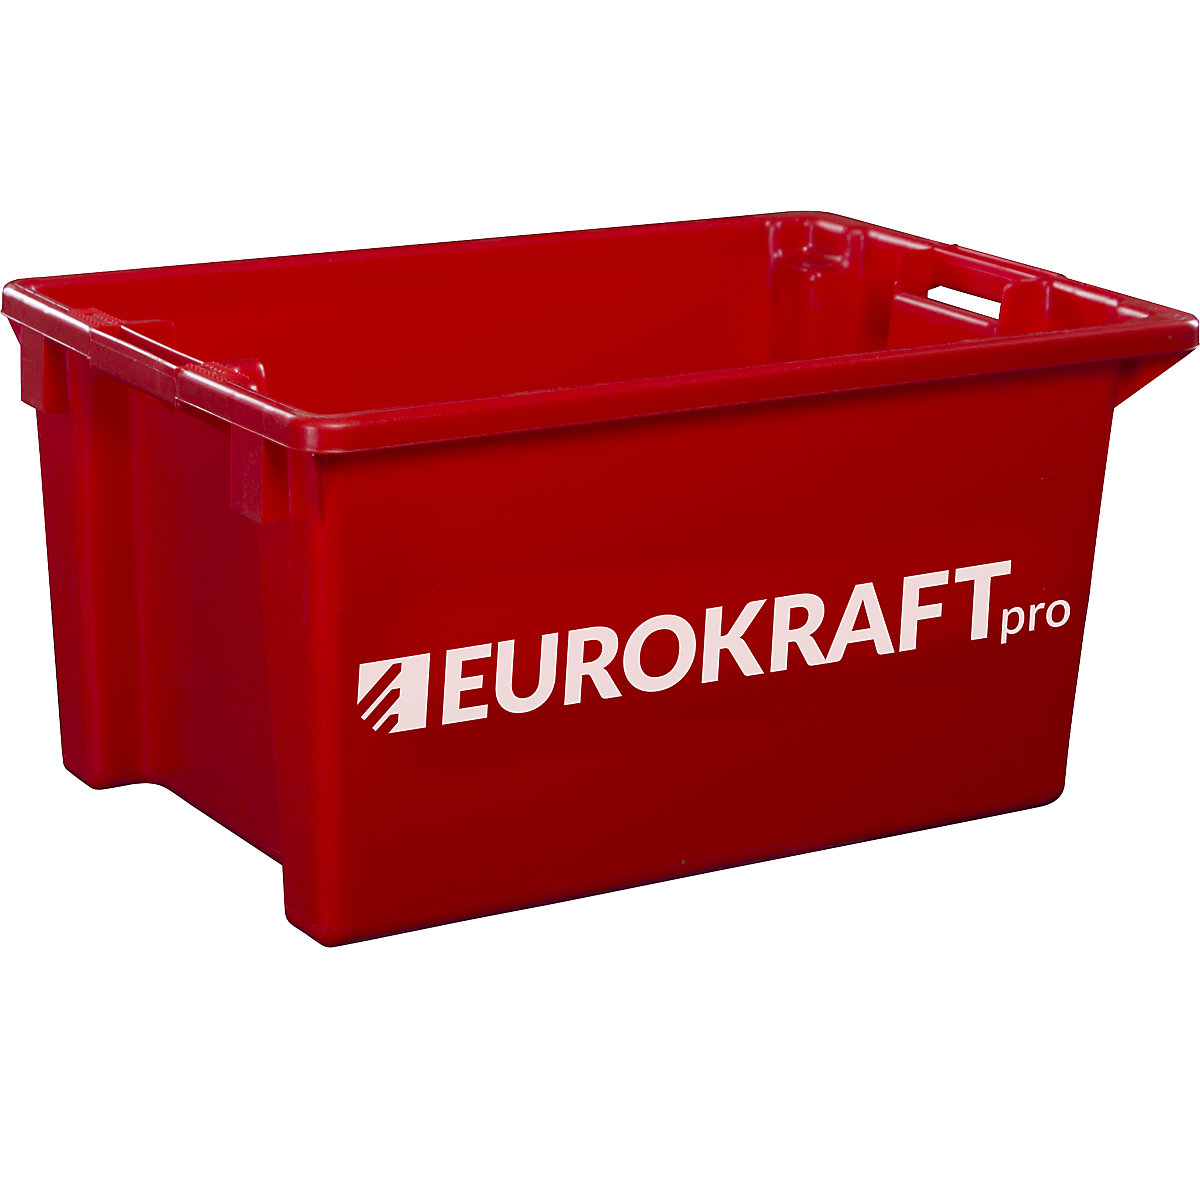 Drehstapelbehälter aus lebensmittelechtem Polypropylen eurokraft pro, Inhalt 70 Liter, VE 2 Stk, Wände und Boden geschlossen, rot